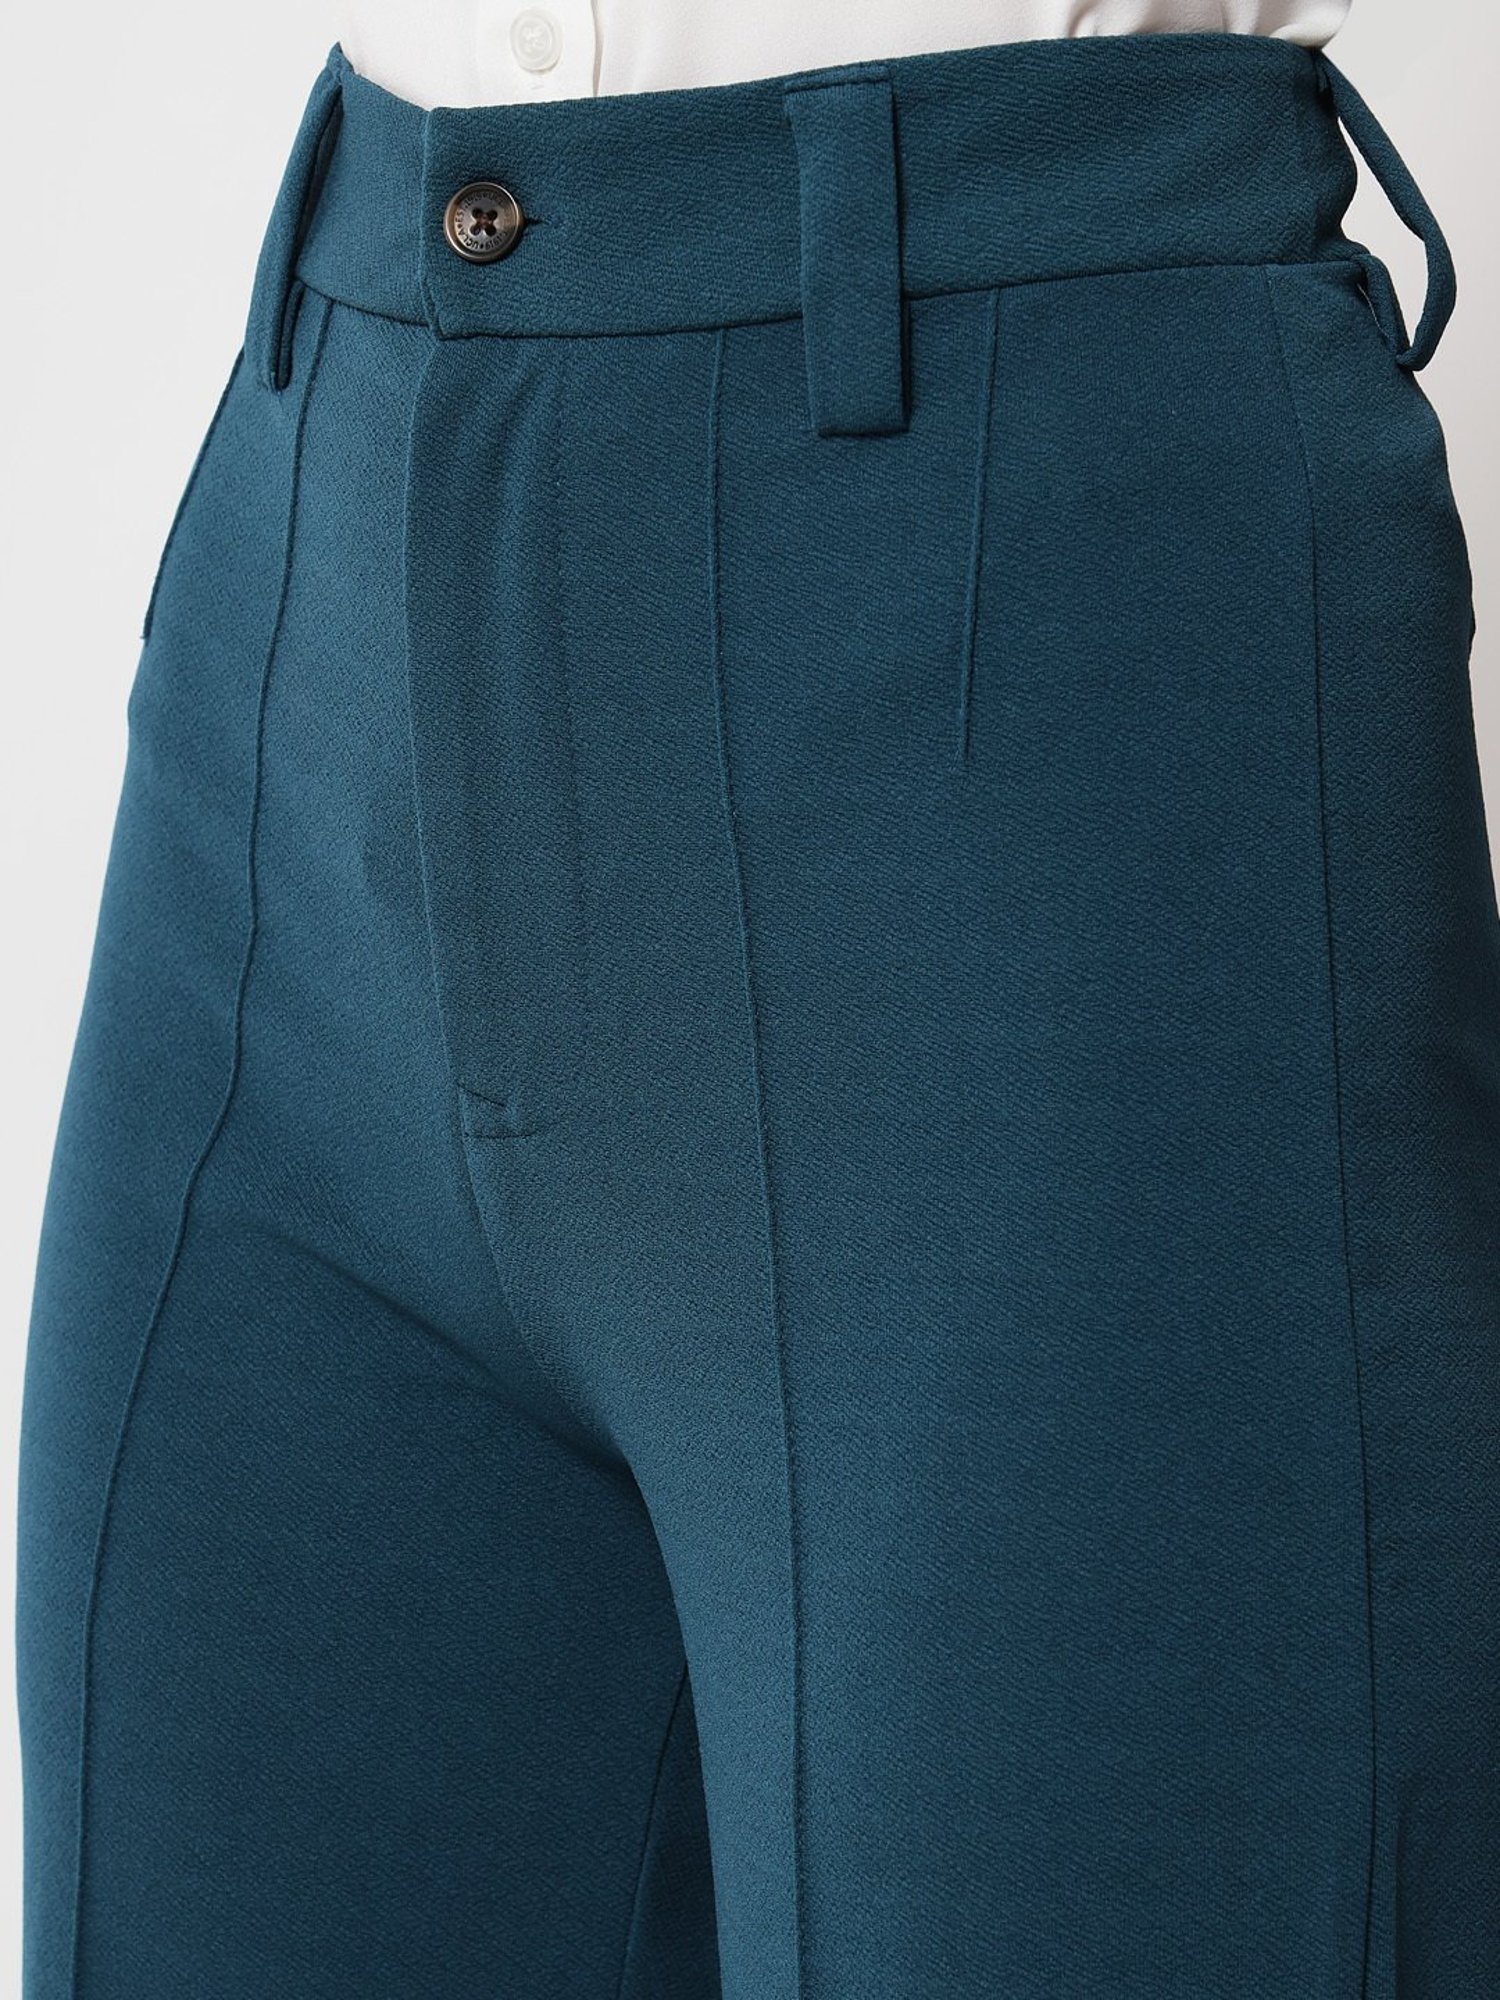 Ucla Casual Trousers - Buy Ucla Casual Trousers online in India